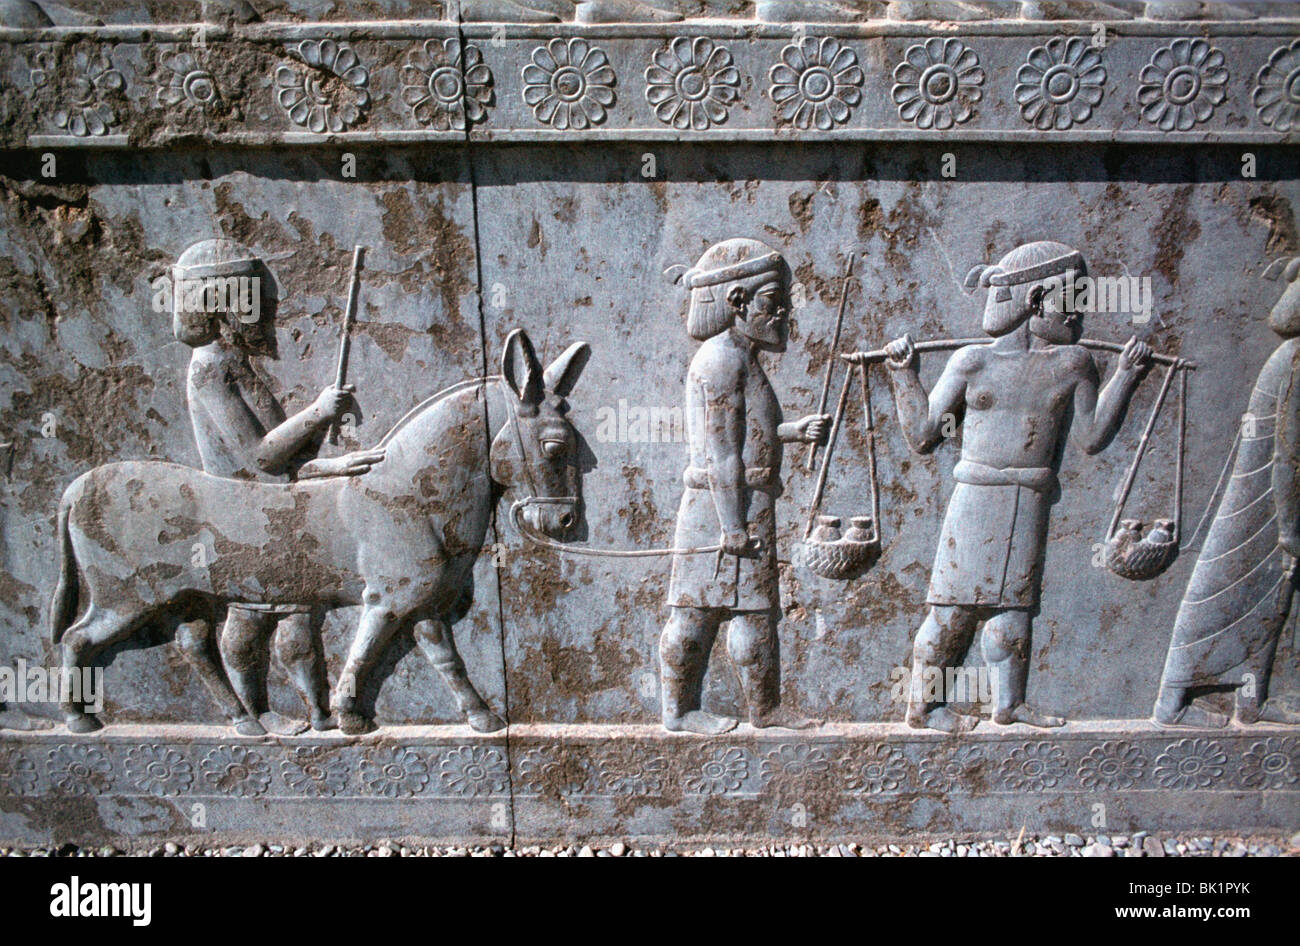 Soulagement des Indiens, l'Apadana, Persepolis, Iran Banque D'Images